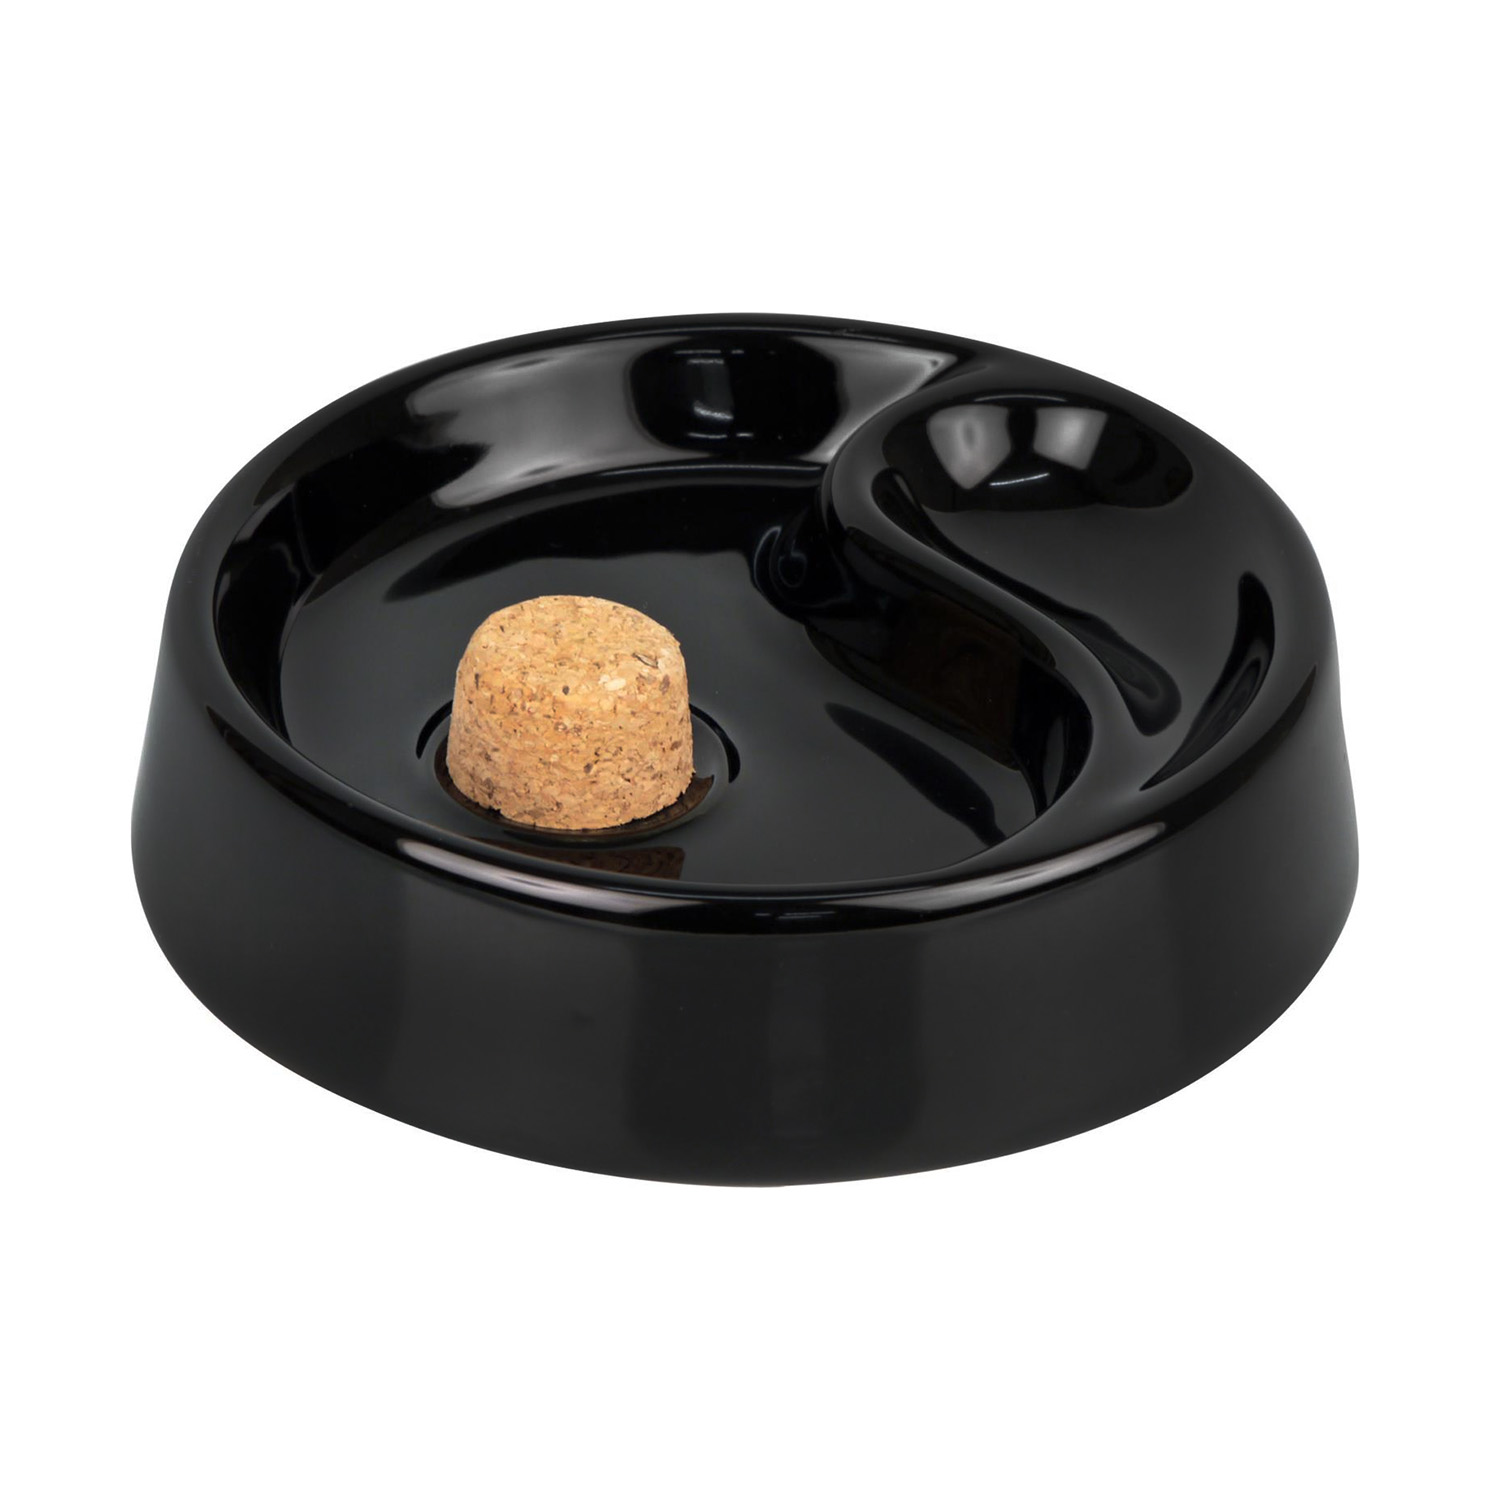 Pipe ashtray ceramic black 1 tray 520/705